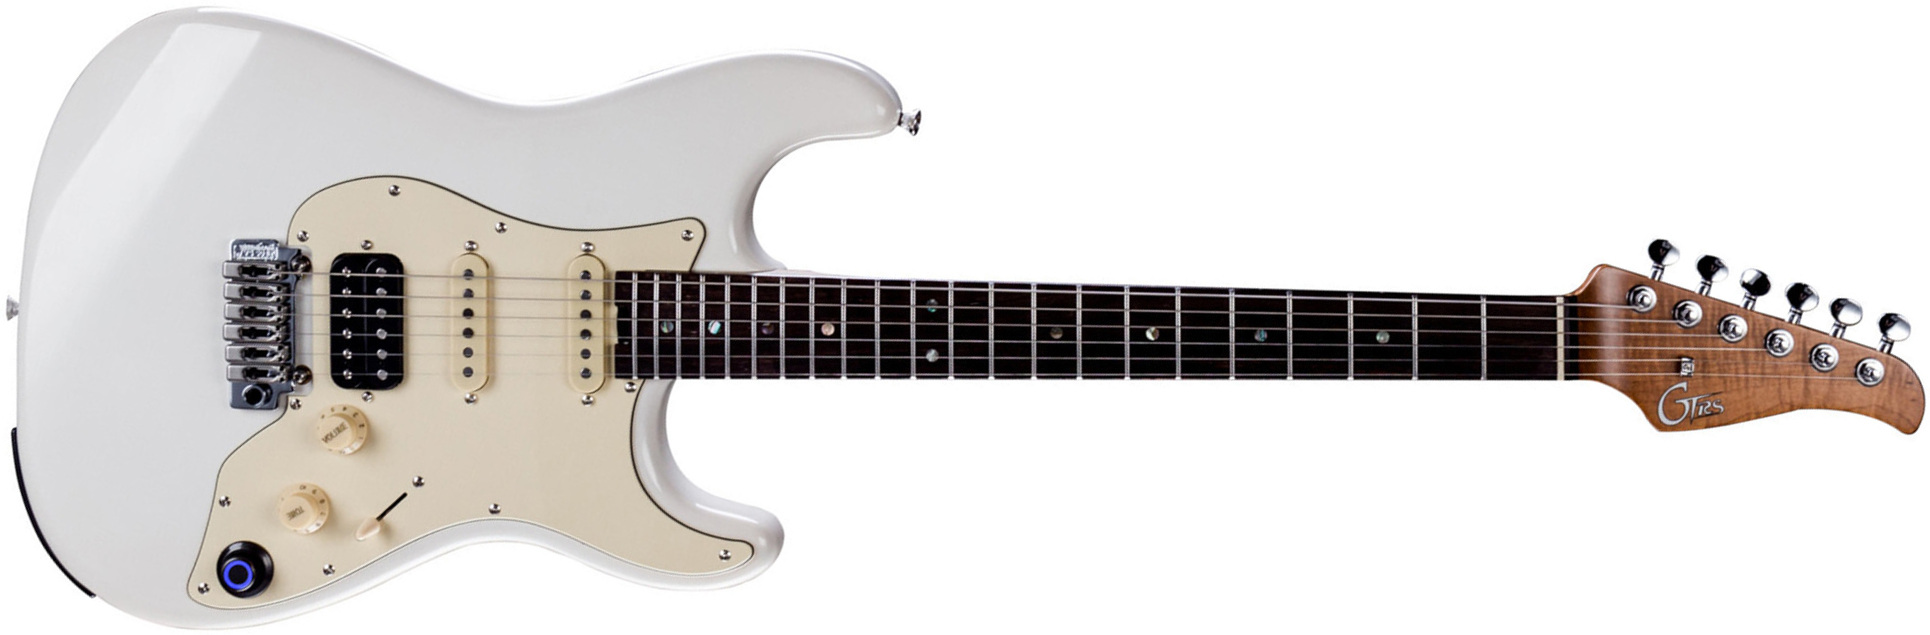 Mooer Gtrs P800 Pro Intelligent Guitar Hss Trem Rw - Olympic White - Guitarra eléctrica de modelización - Main picture